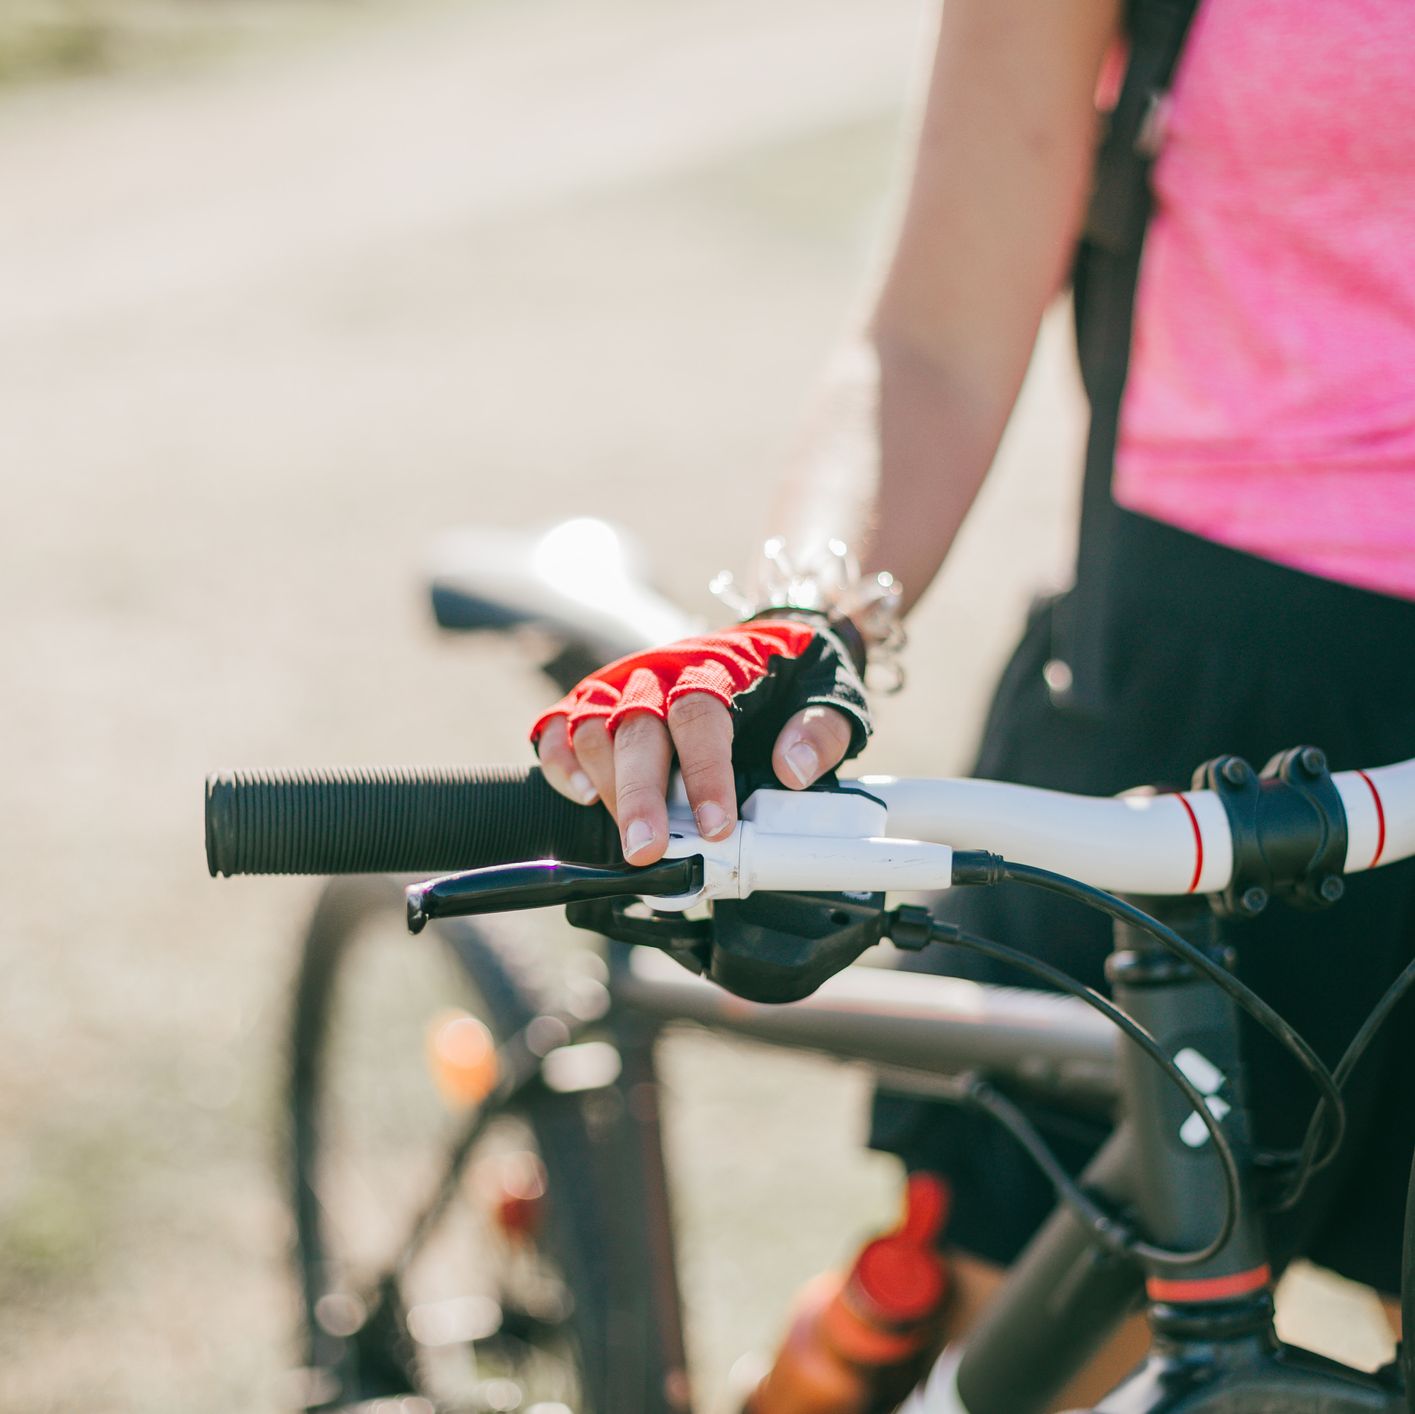 bicicleta de Decathlon que entre las mujeres